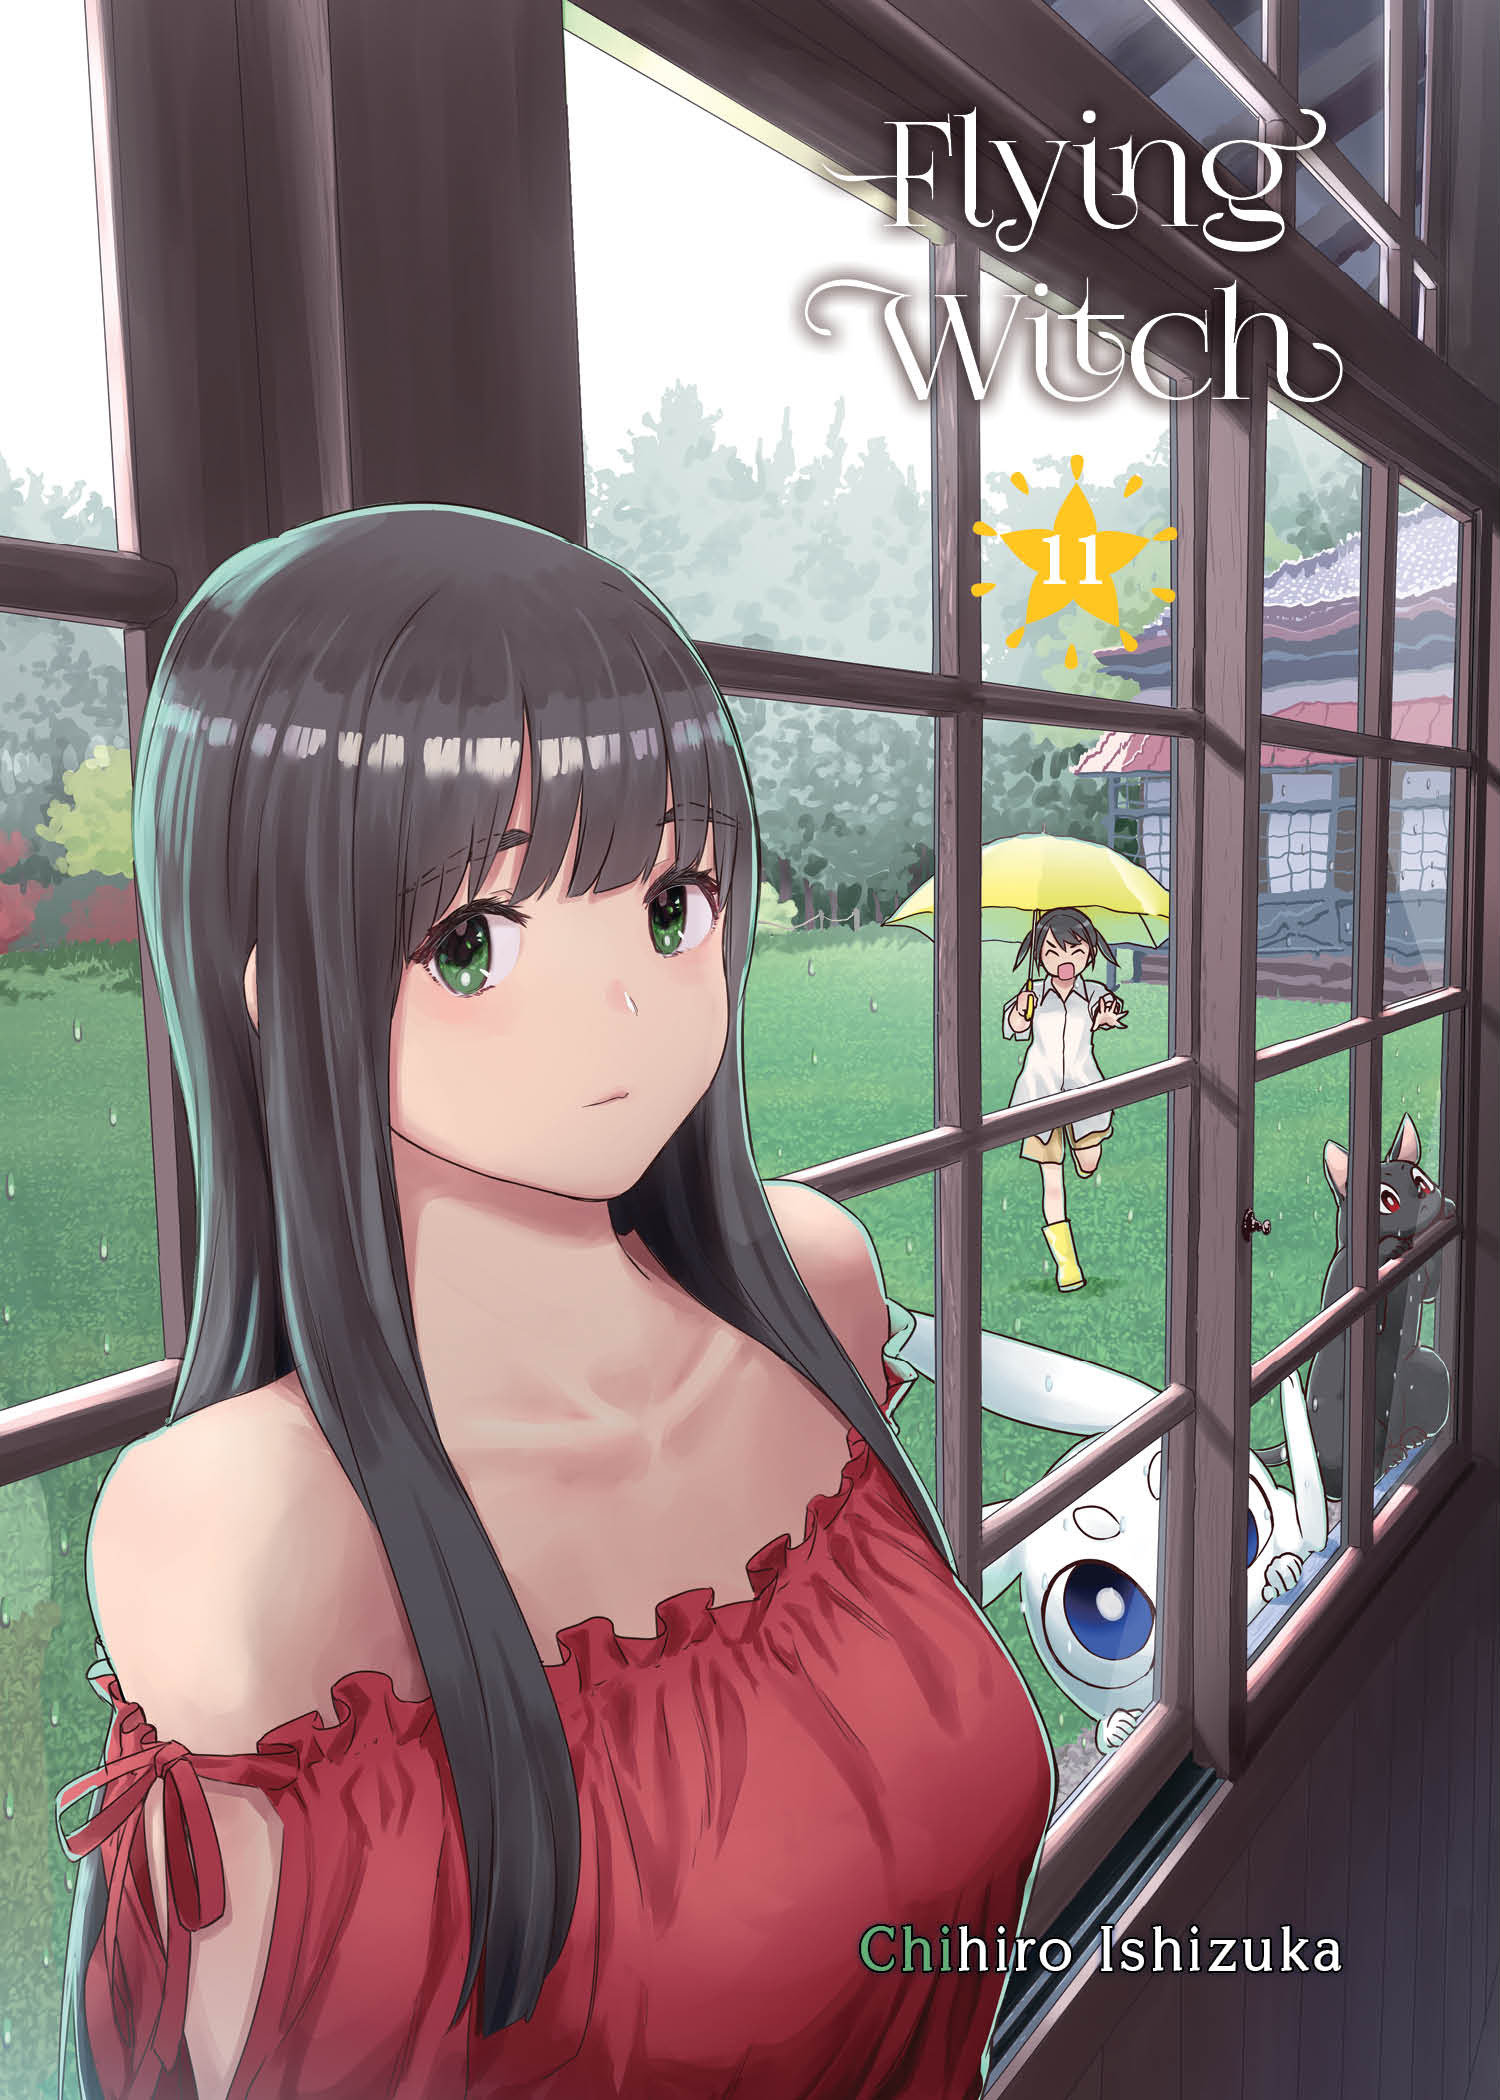 Flying Witch Manga Volume 11